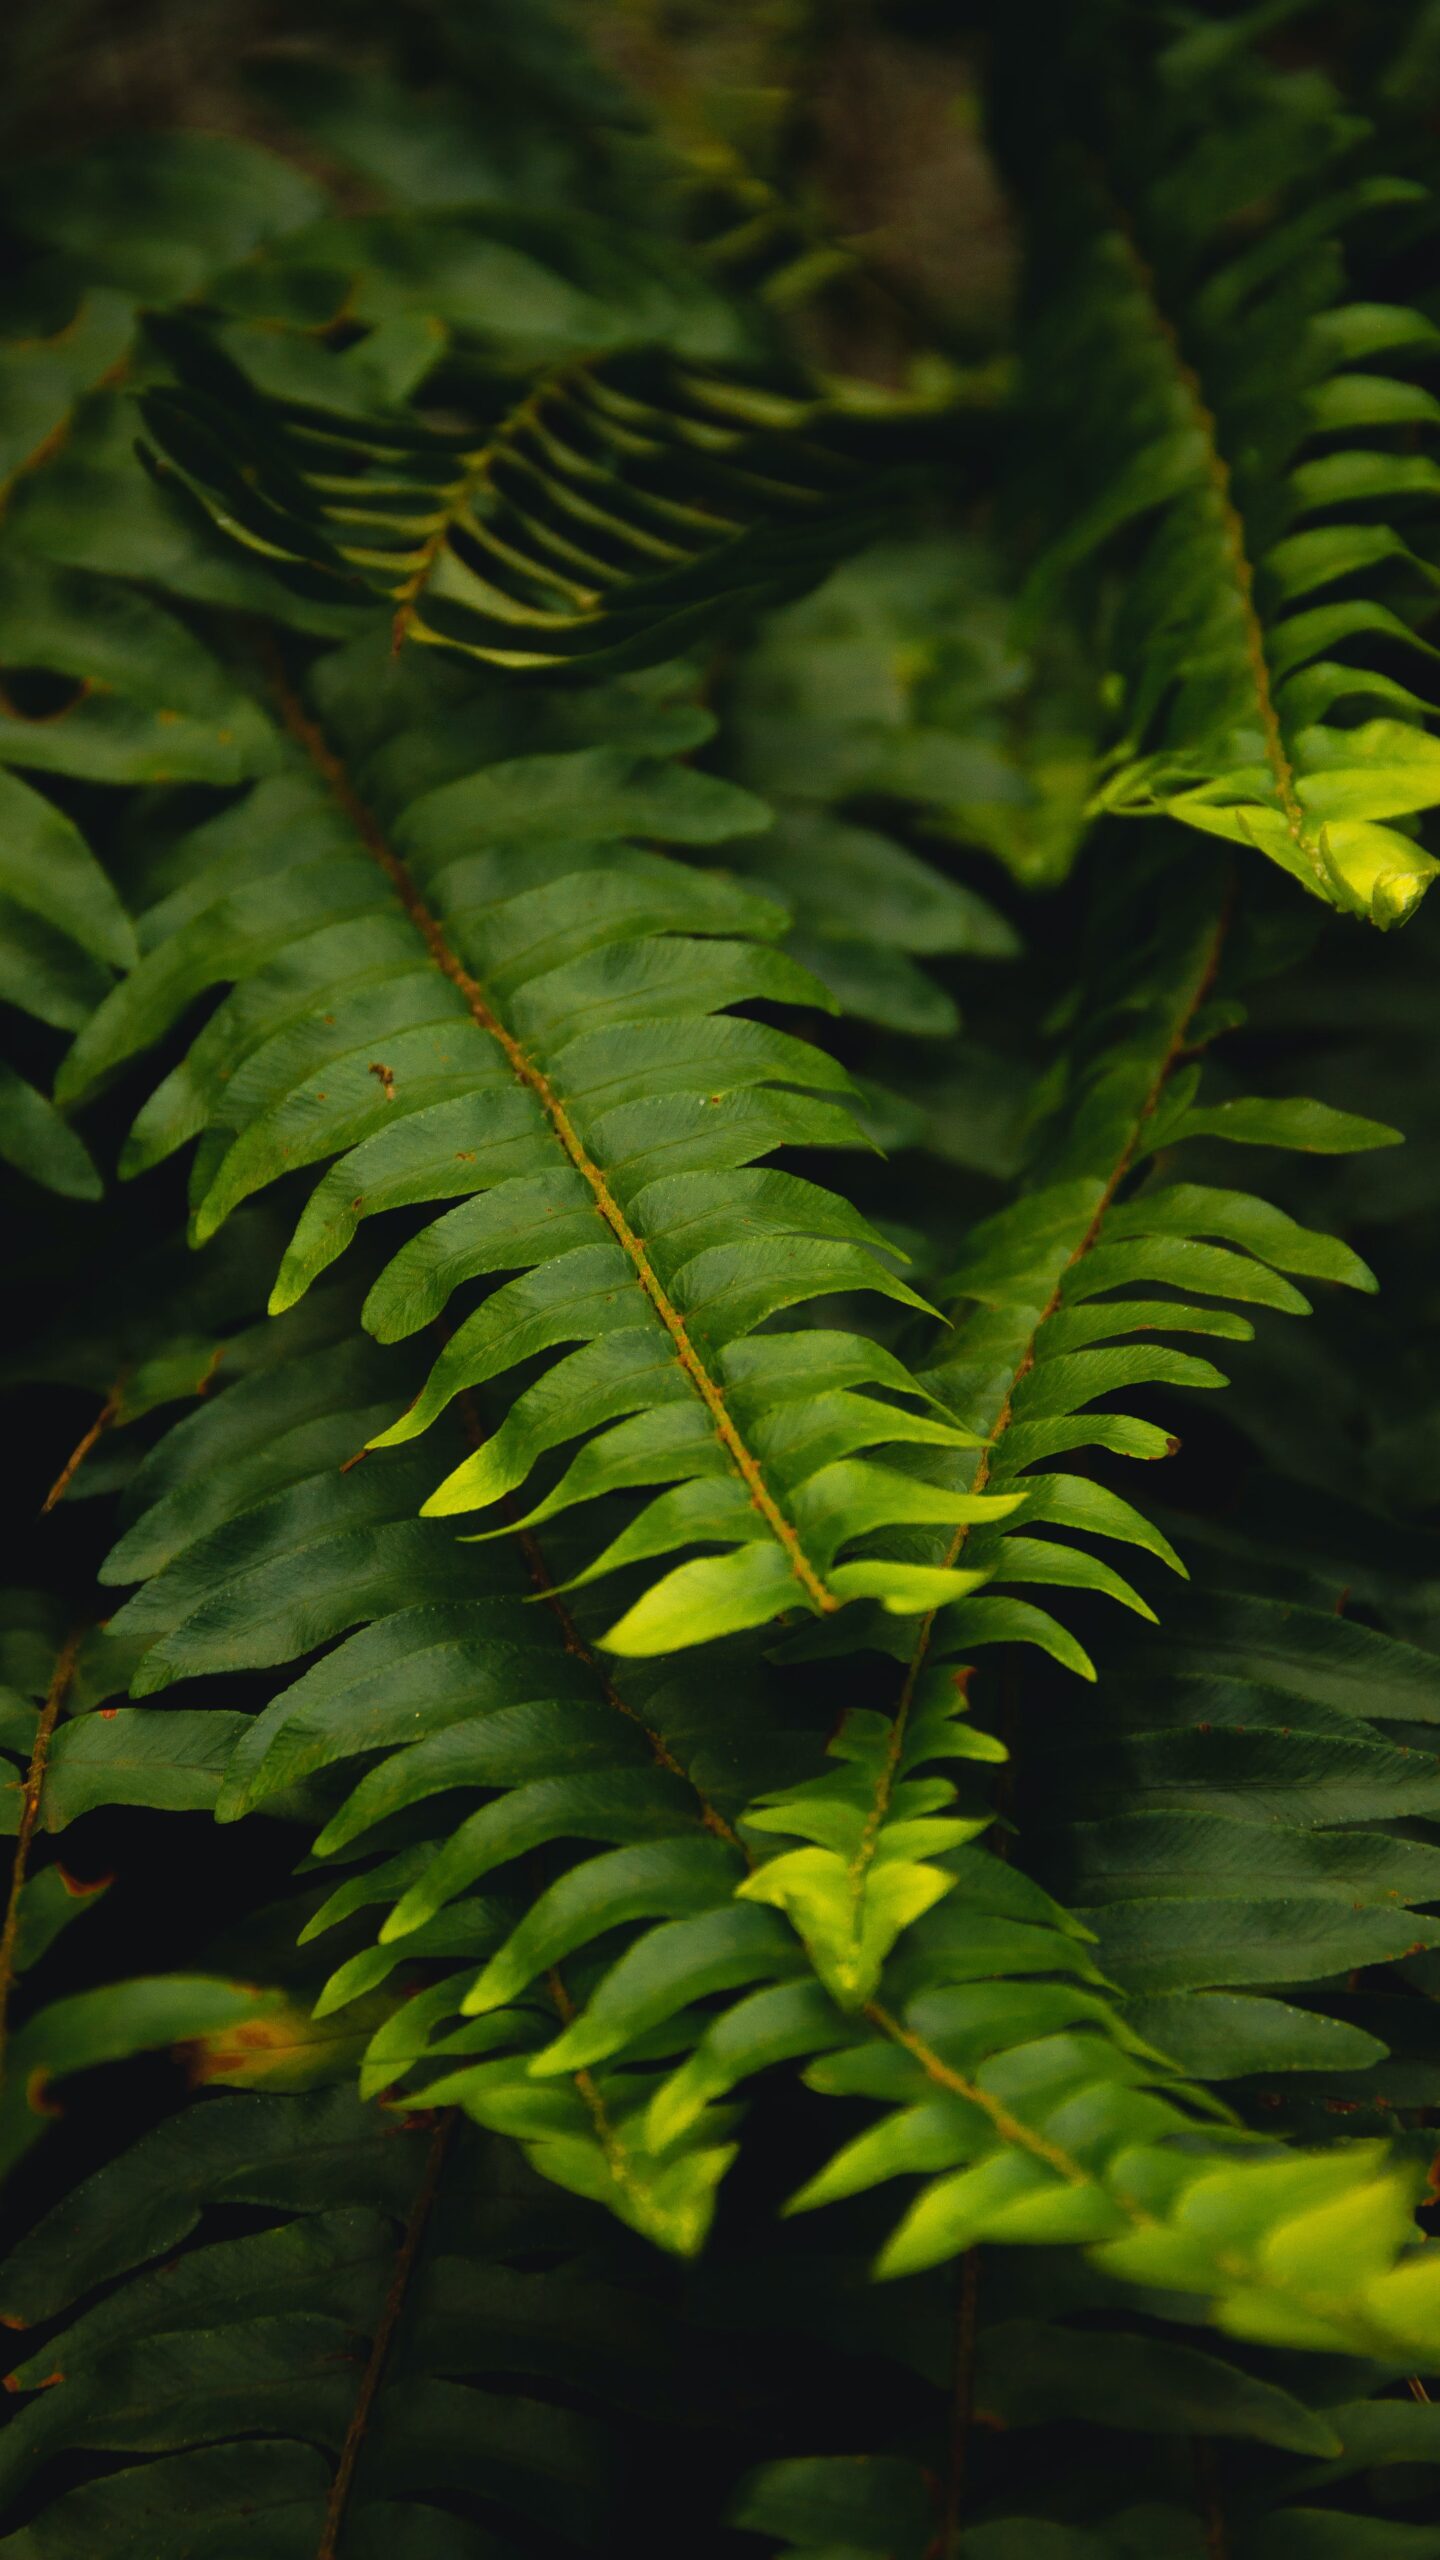 Boston Fern types of fern plants